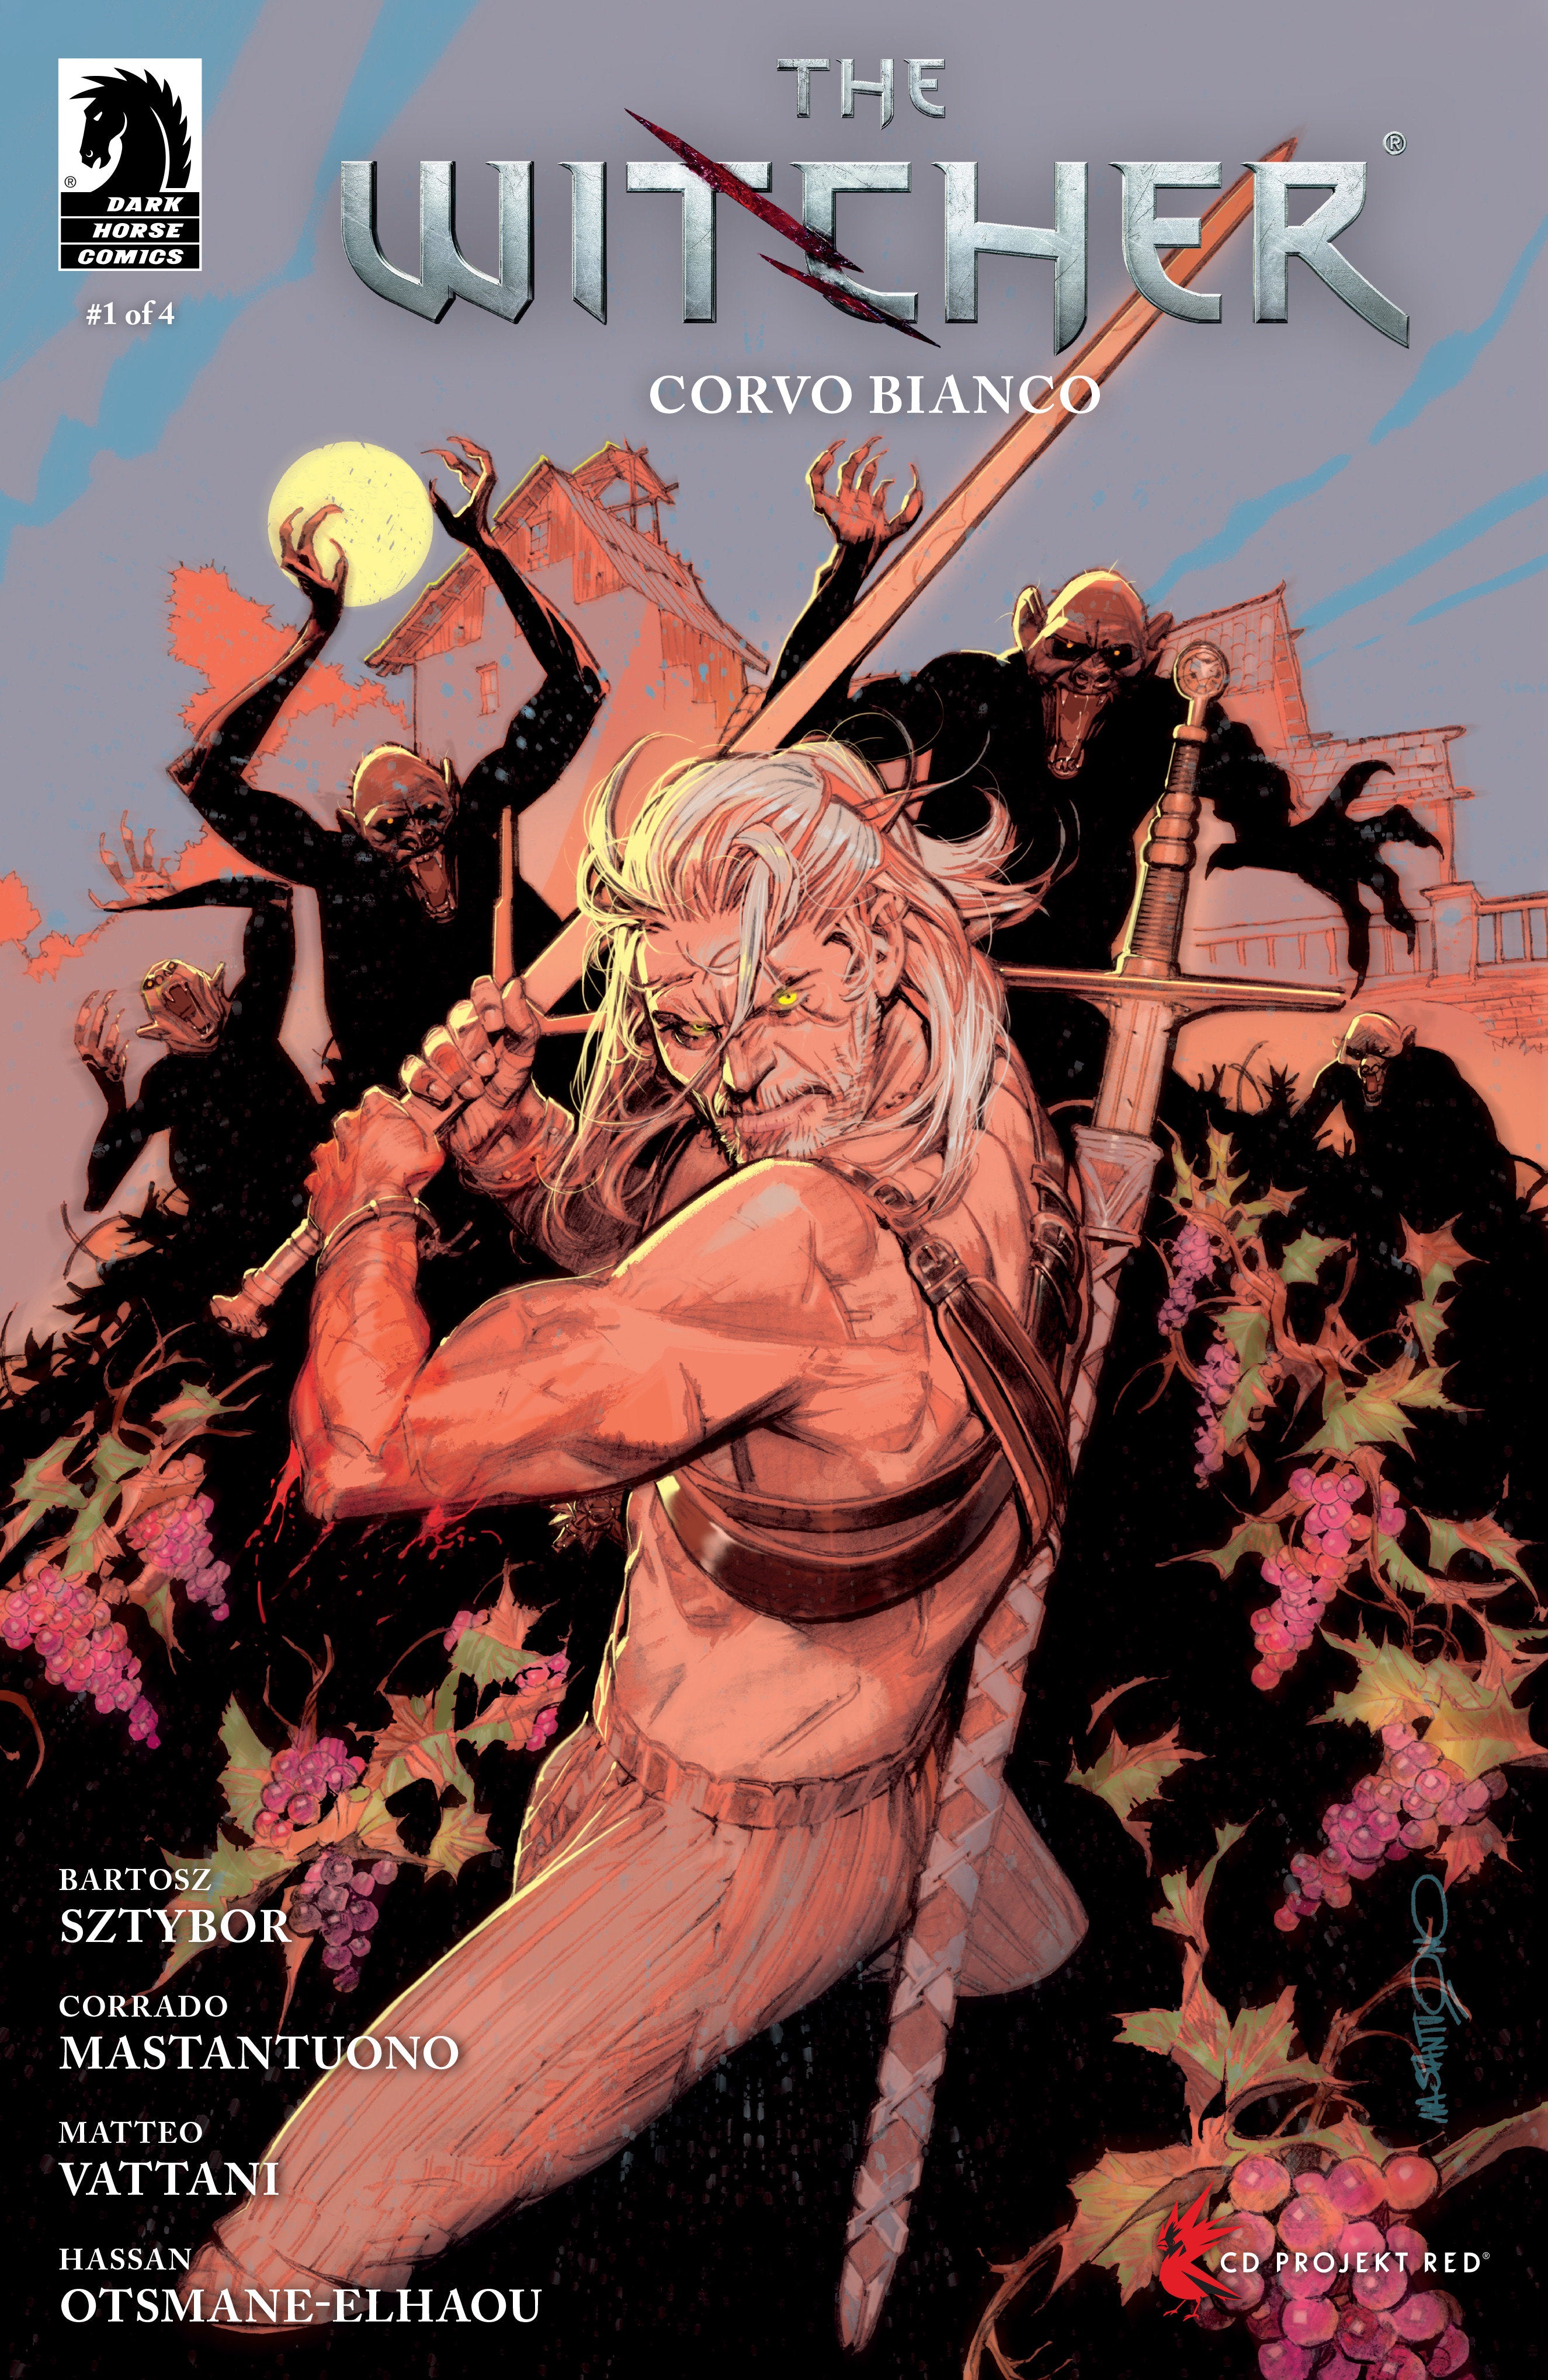 The Witcher: Corvo Bianco #1 (Cover A) (Corrado Mastantuono)